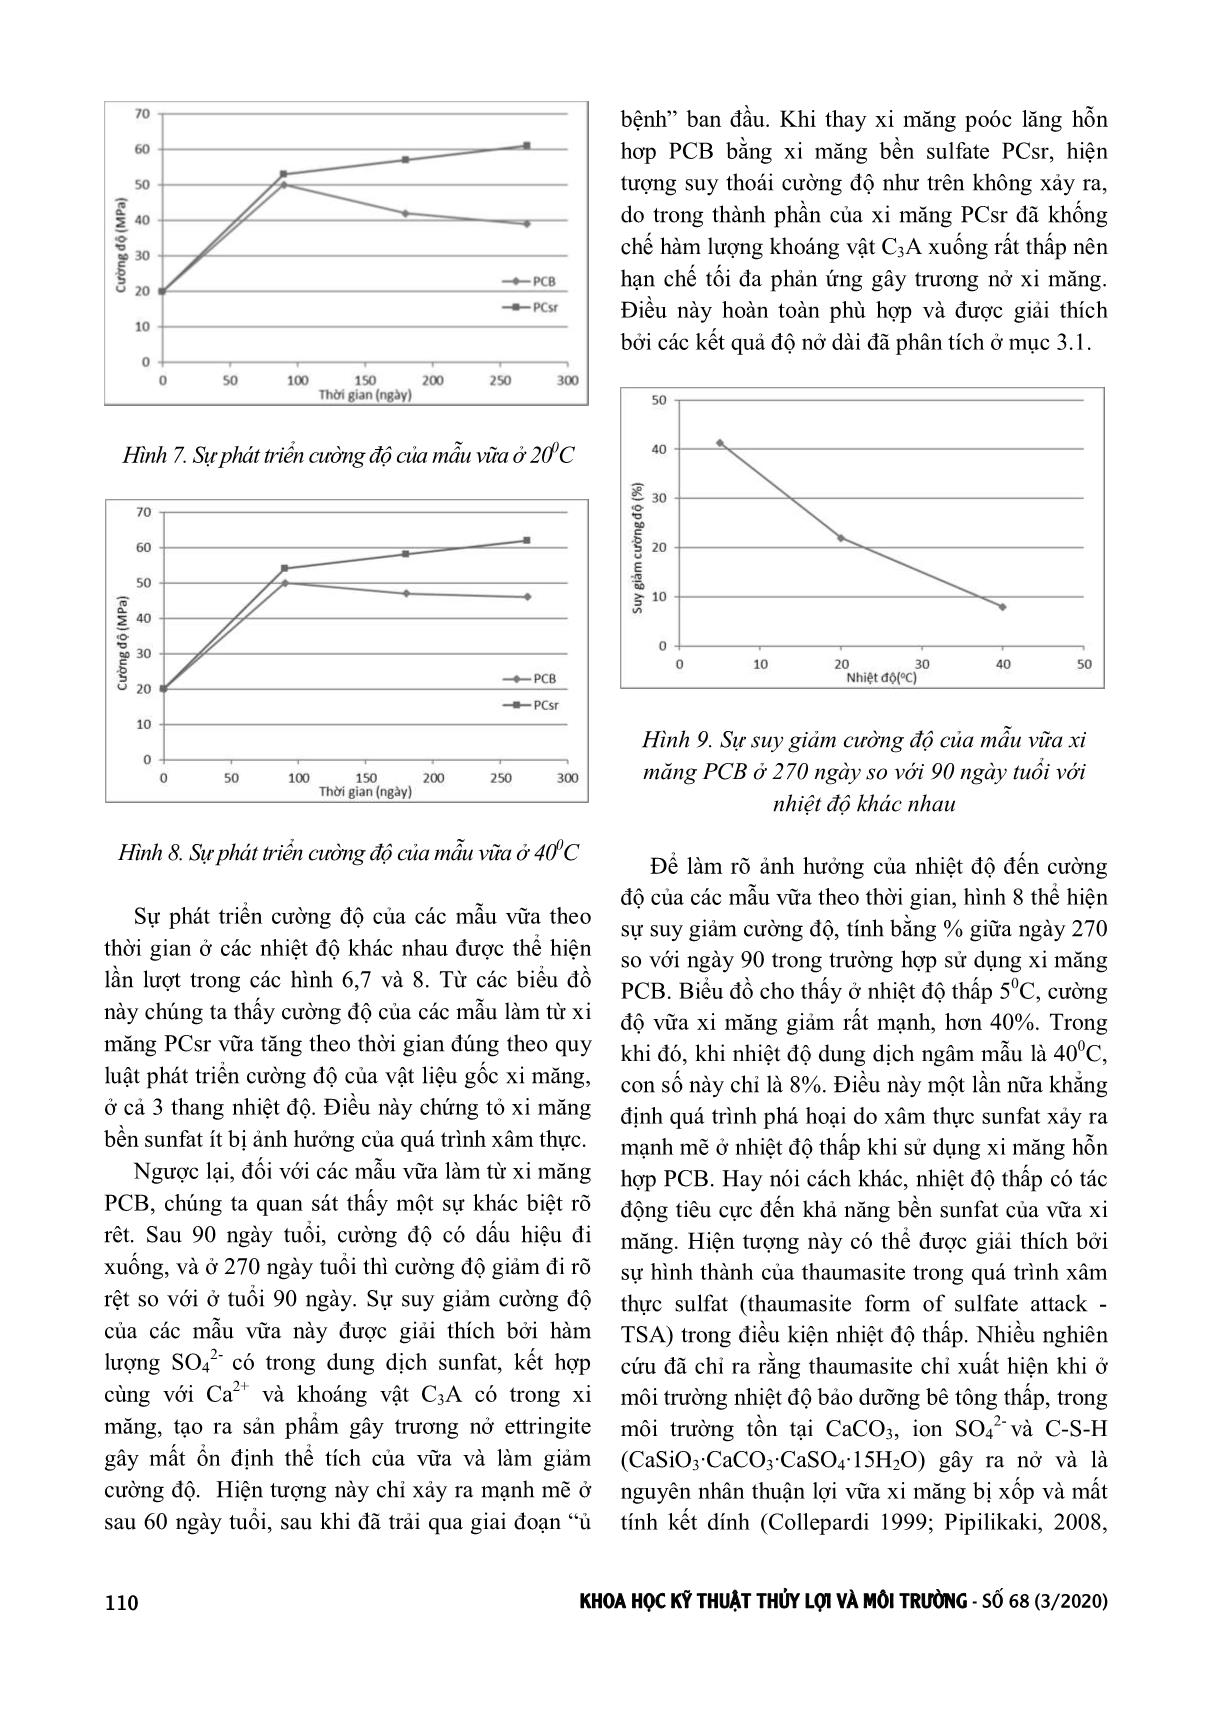 Ảnh hưởng của nhiệt độ đến cường độ và độ bền của vật liệu gốc xi măng trong môi trường Sunfat trang 4